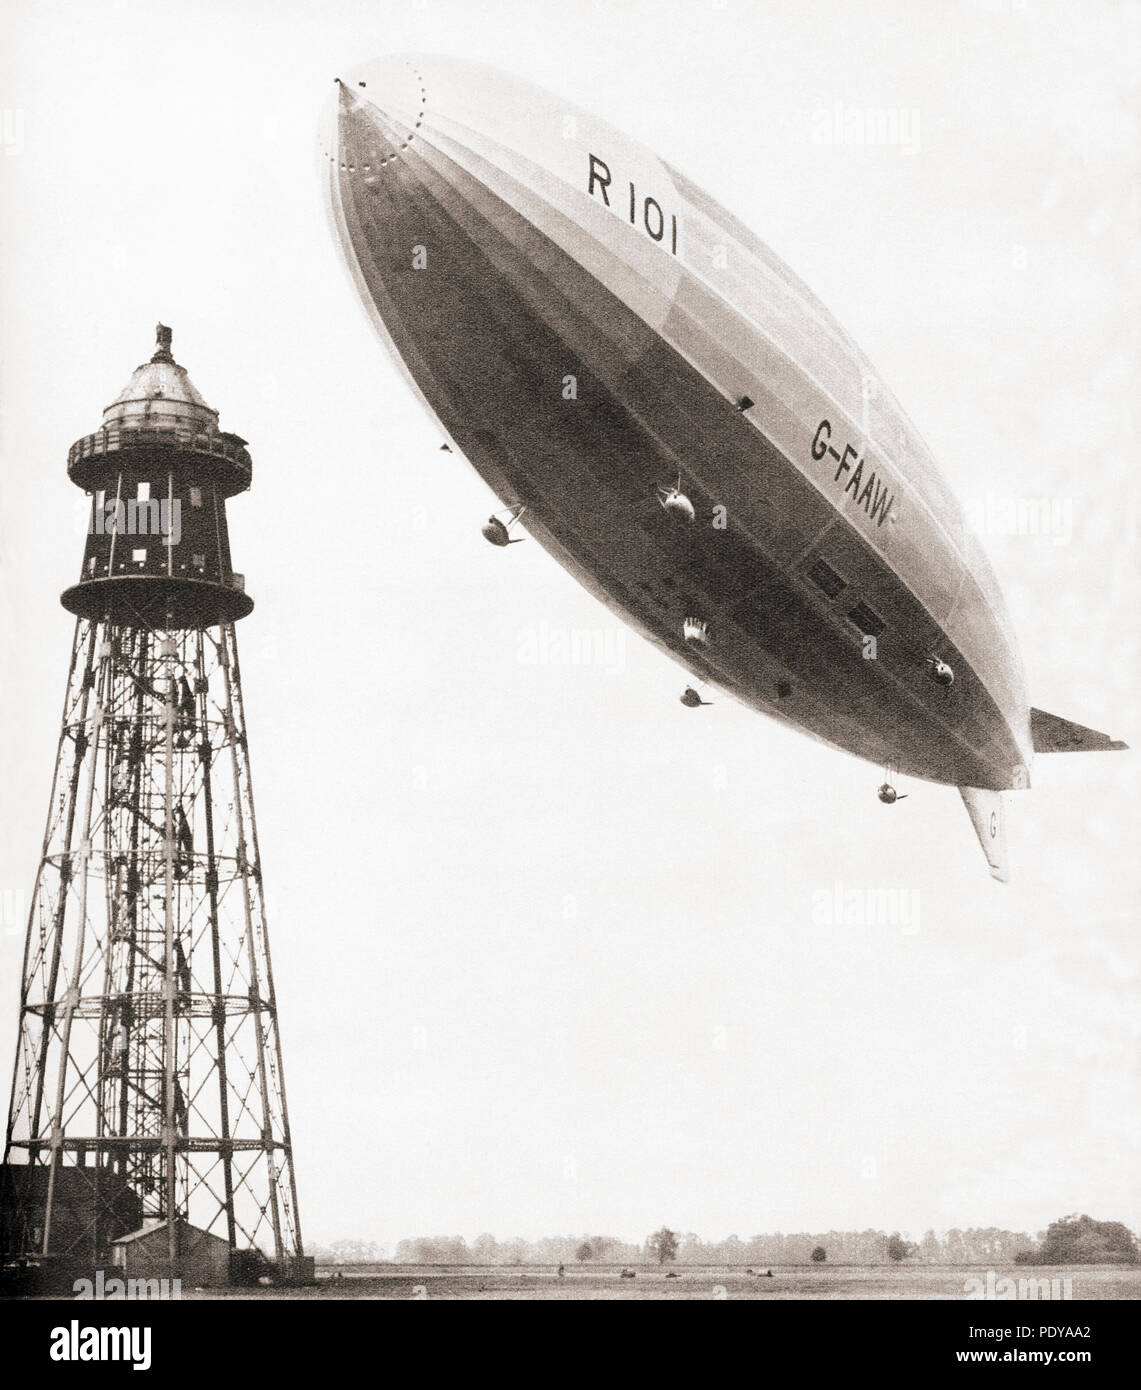 El último vuelo del dirigible rígido británico R101 que se estrelló durante malas condiciones meteorológicas en Francia en 1930. 48 de las 54 personas a bordo murieron en el accidente. A partir de estos tremendos Años, publicado en 1938. Foto de stock